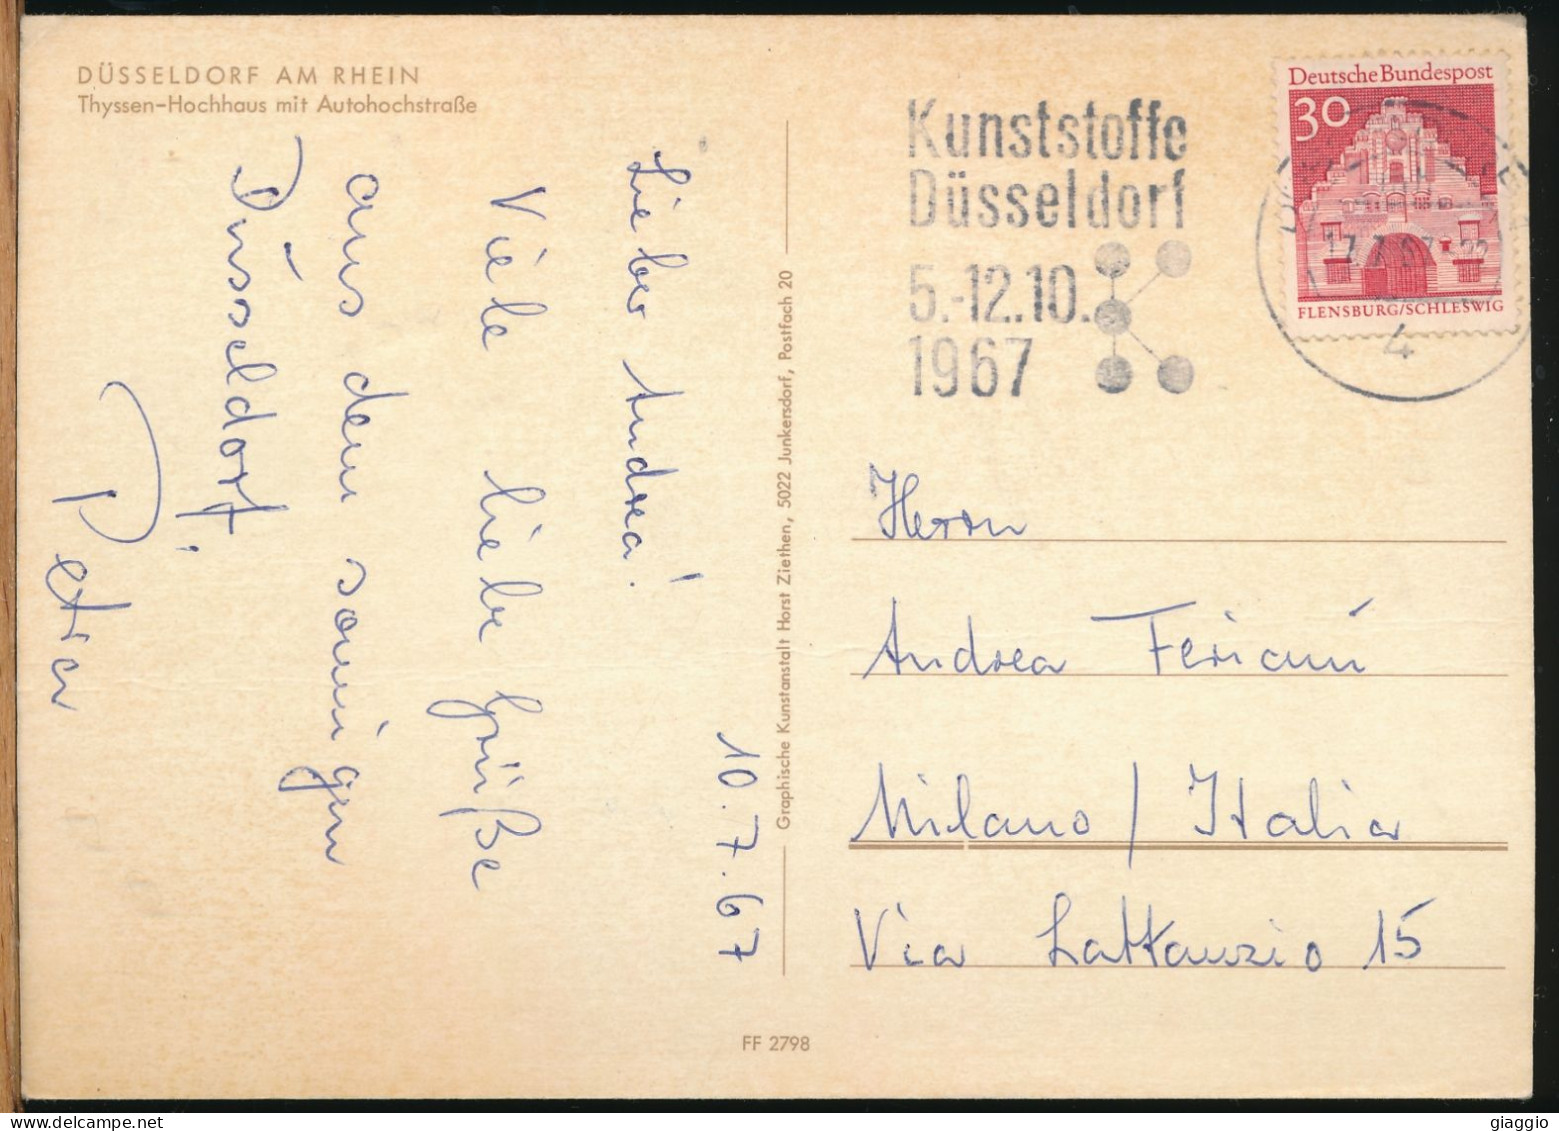 °°° 31048 - GERMANY - DUSSELDORF AM RHEIN - THYSSEN HOCHHAUS MIT AUTOHOCHSTRASSE - 1975 With Stamps °°° - Duesseldorf